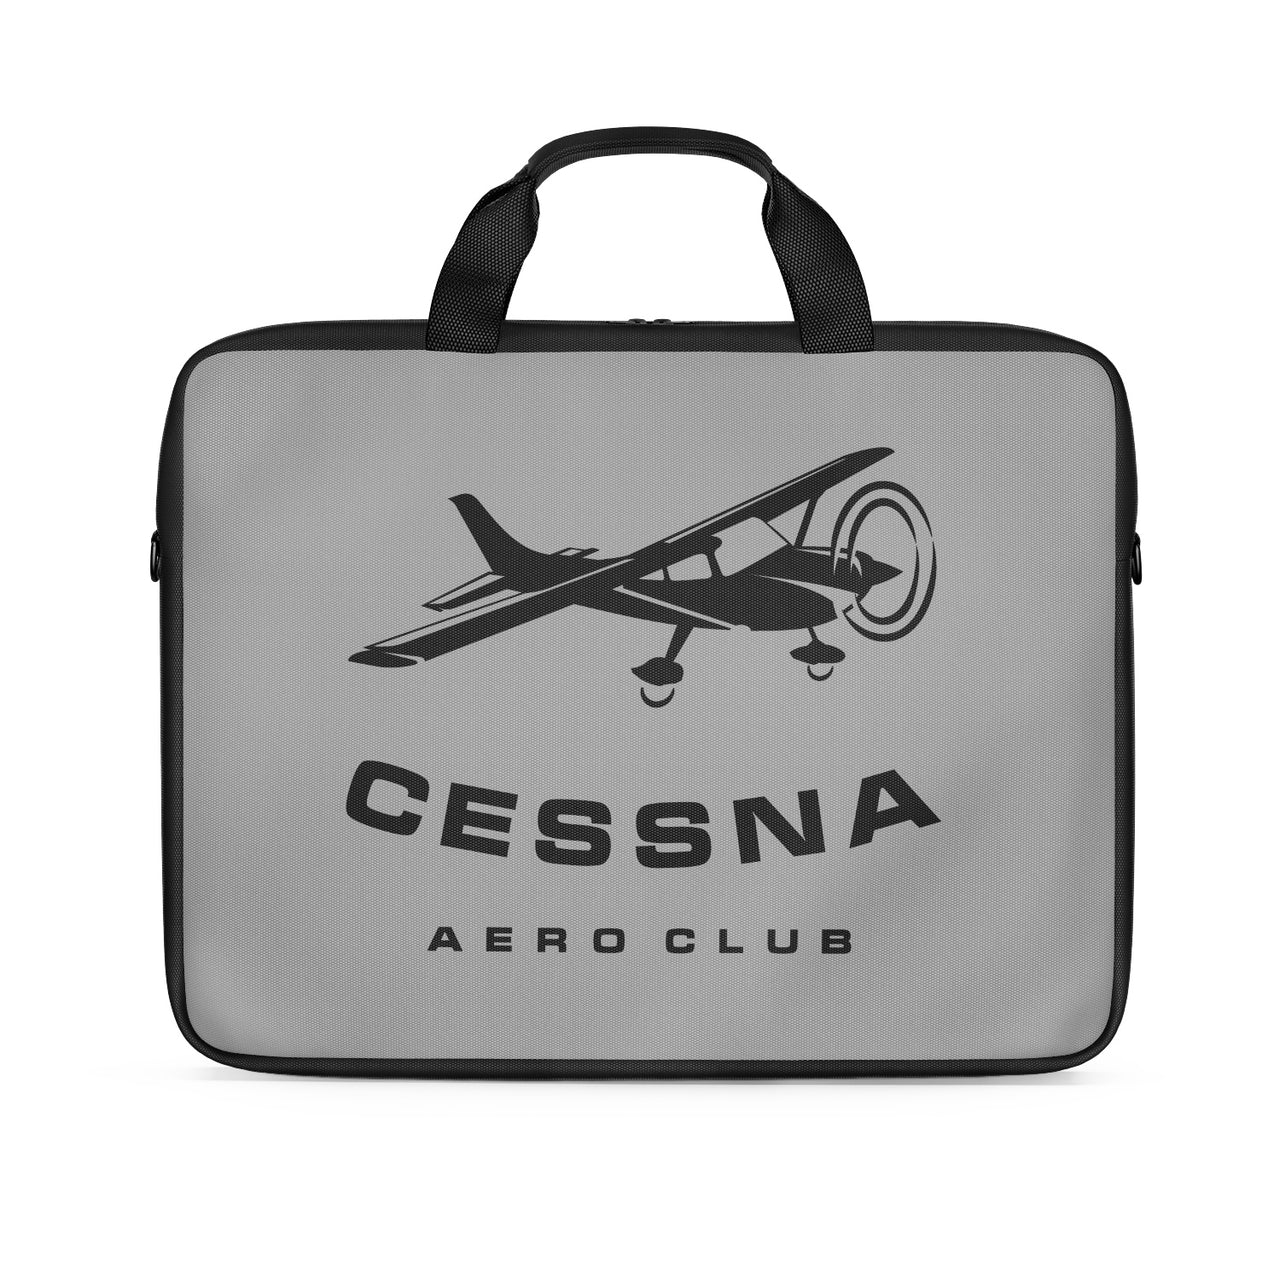 Cessna Aeroclub Designed Laptop & Tablet Bags